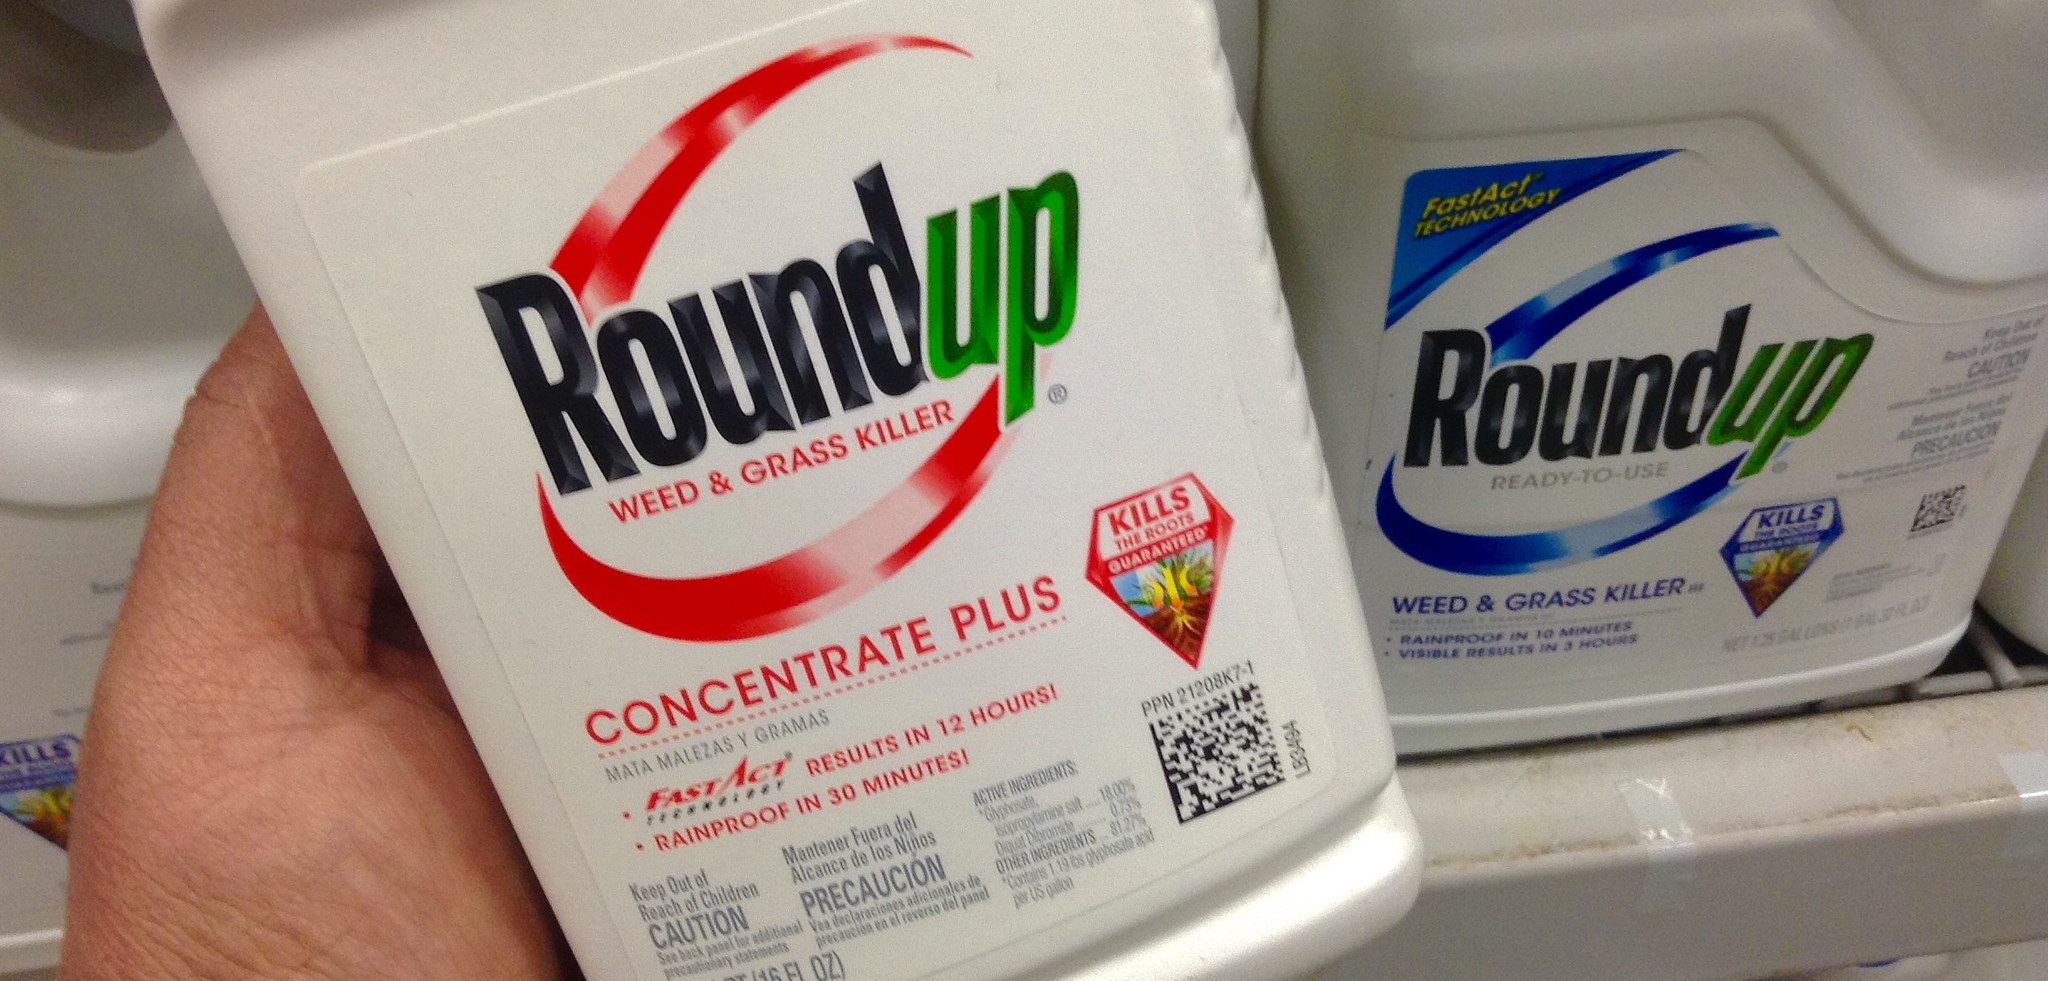 Roundup, herbicida hecho con glifosato, el producto estrella de Monsanto. Foto: Mike Mozart